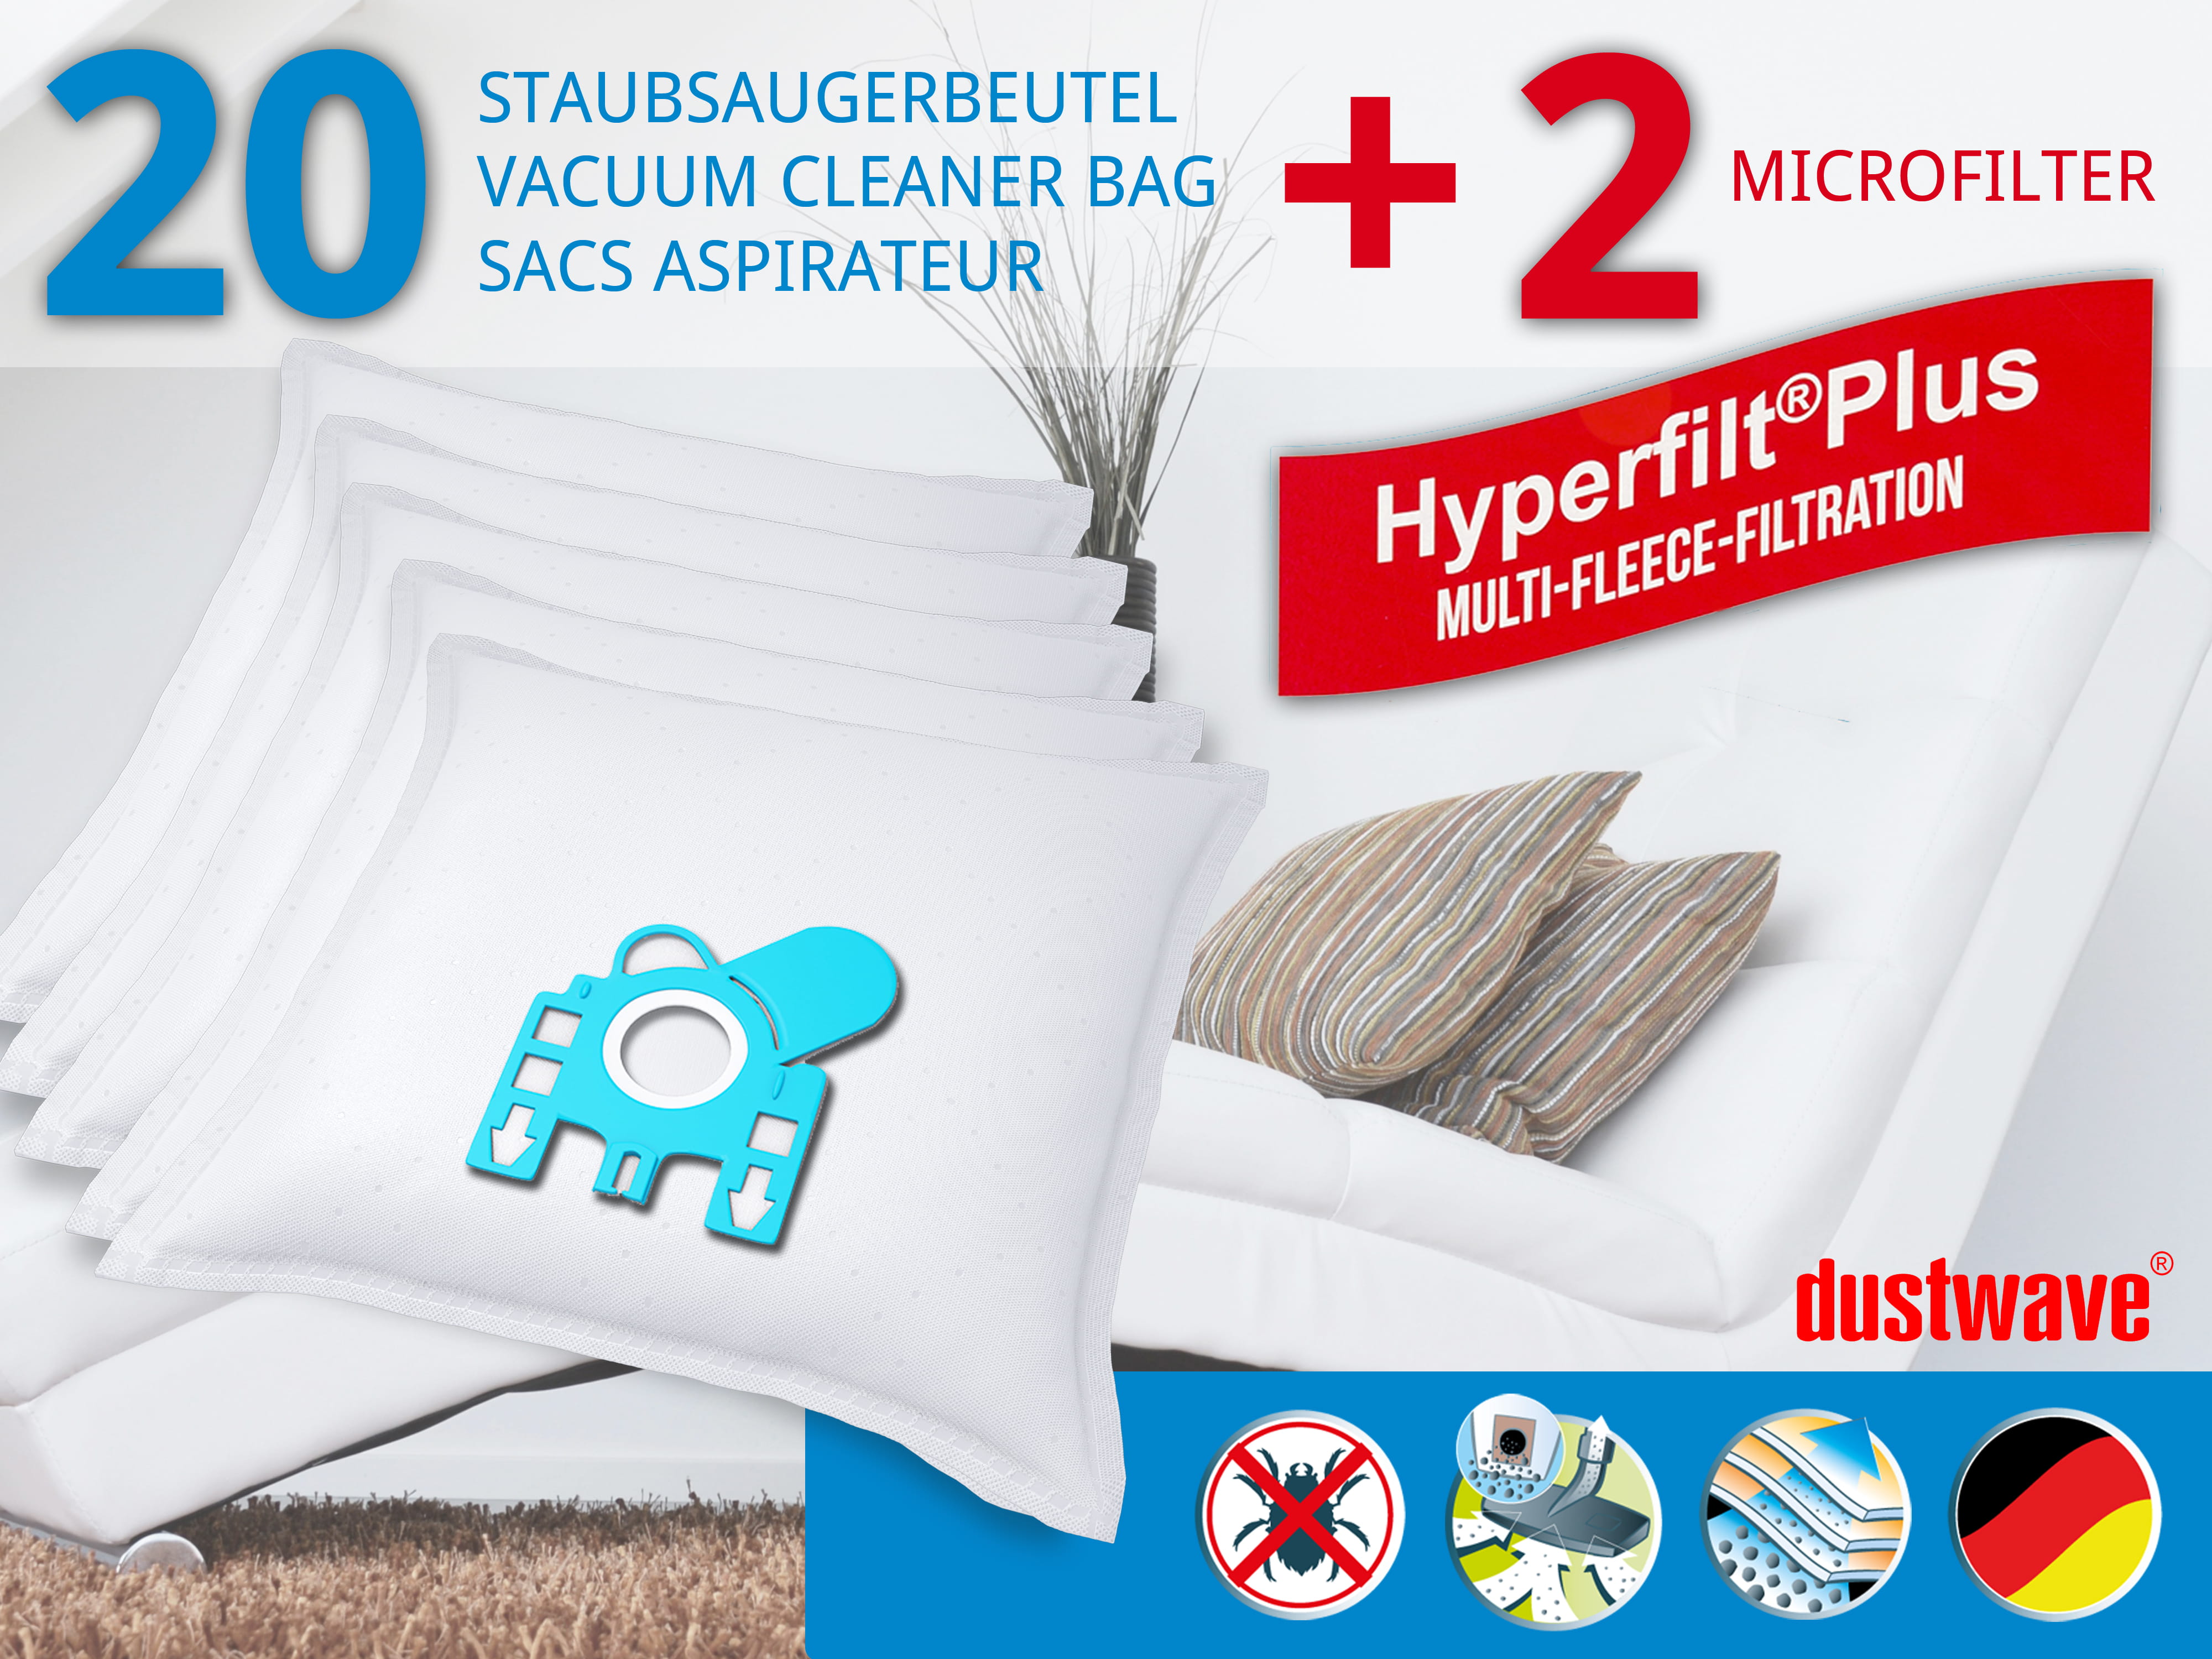 Dustwave® 20 Staubsaugerbeutel für Hoover TC3927 / TRTC3927 - hocheffizient, mehrlagiges Mikrovlies mit Hygieneverschluss - Made in Germany